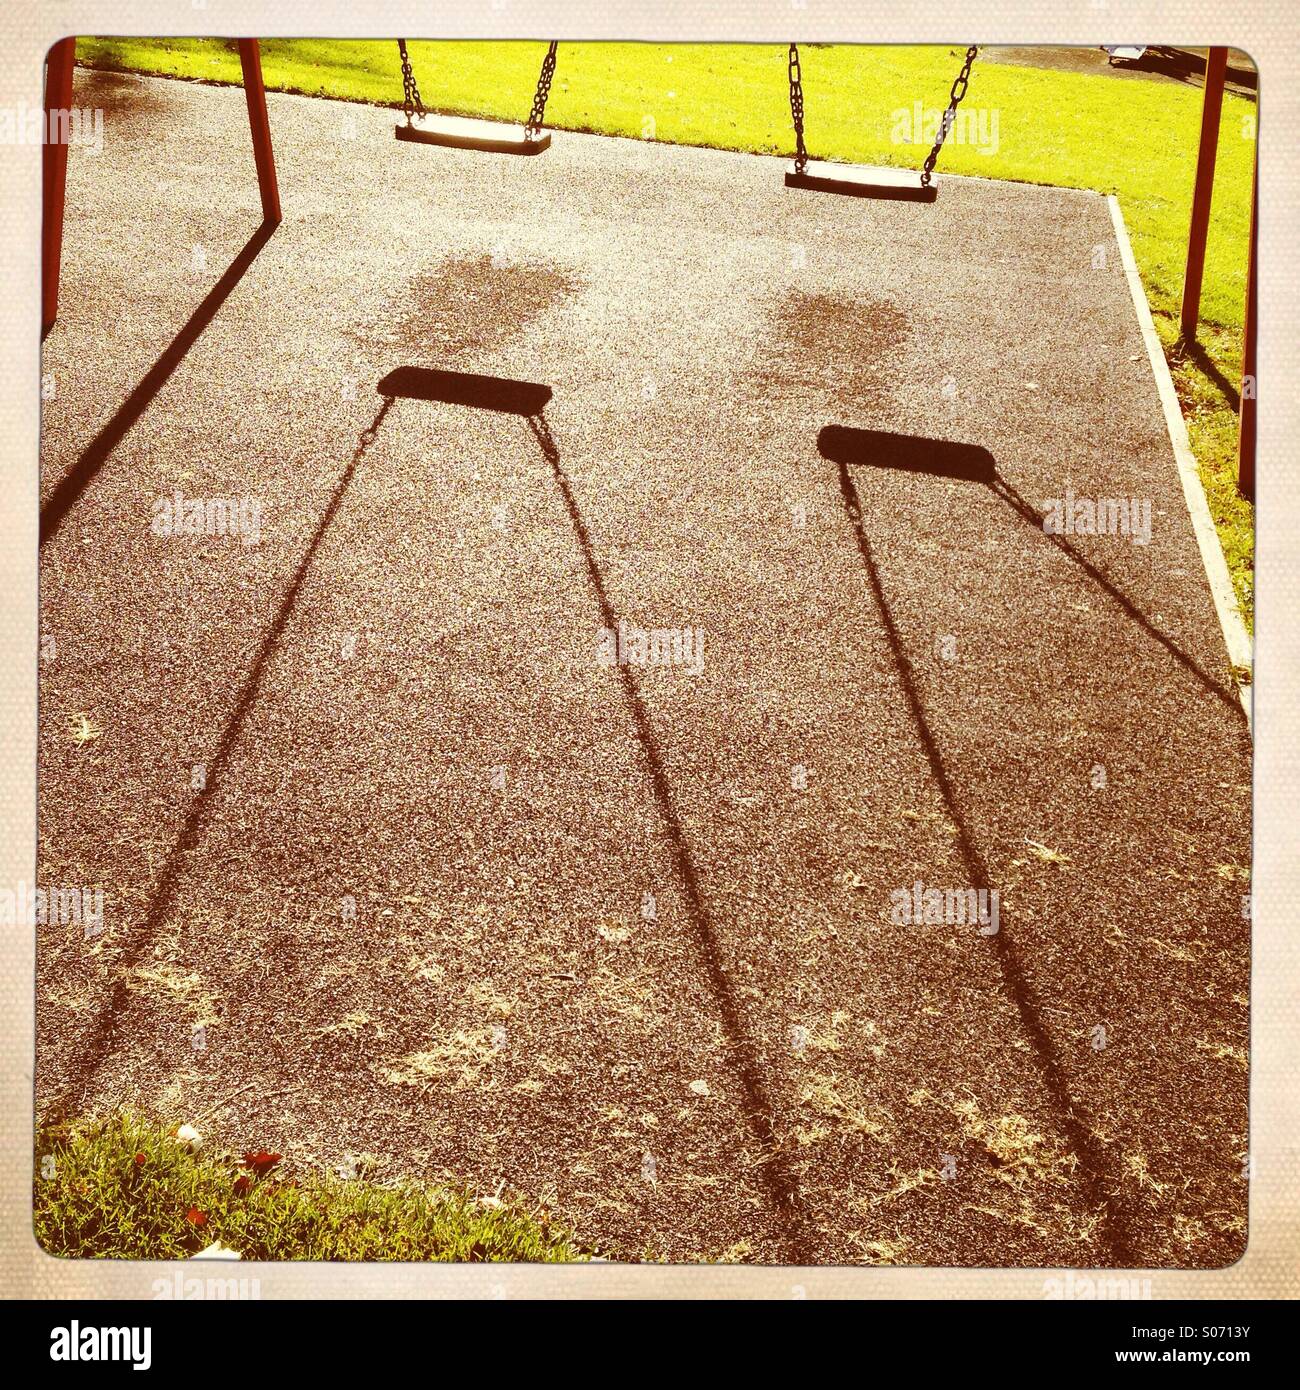 Sombras de columpios en un parque de juegos para niños. UK Foto de stock